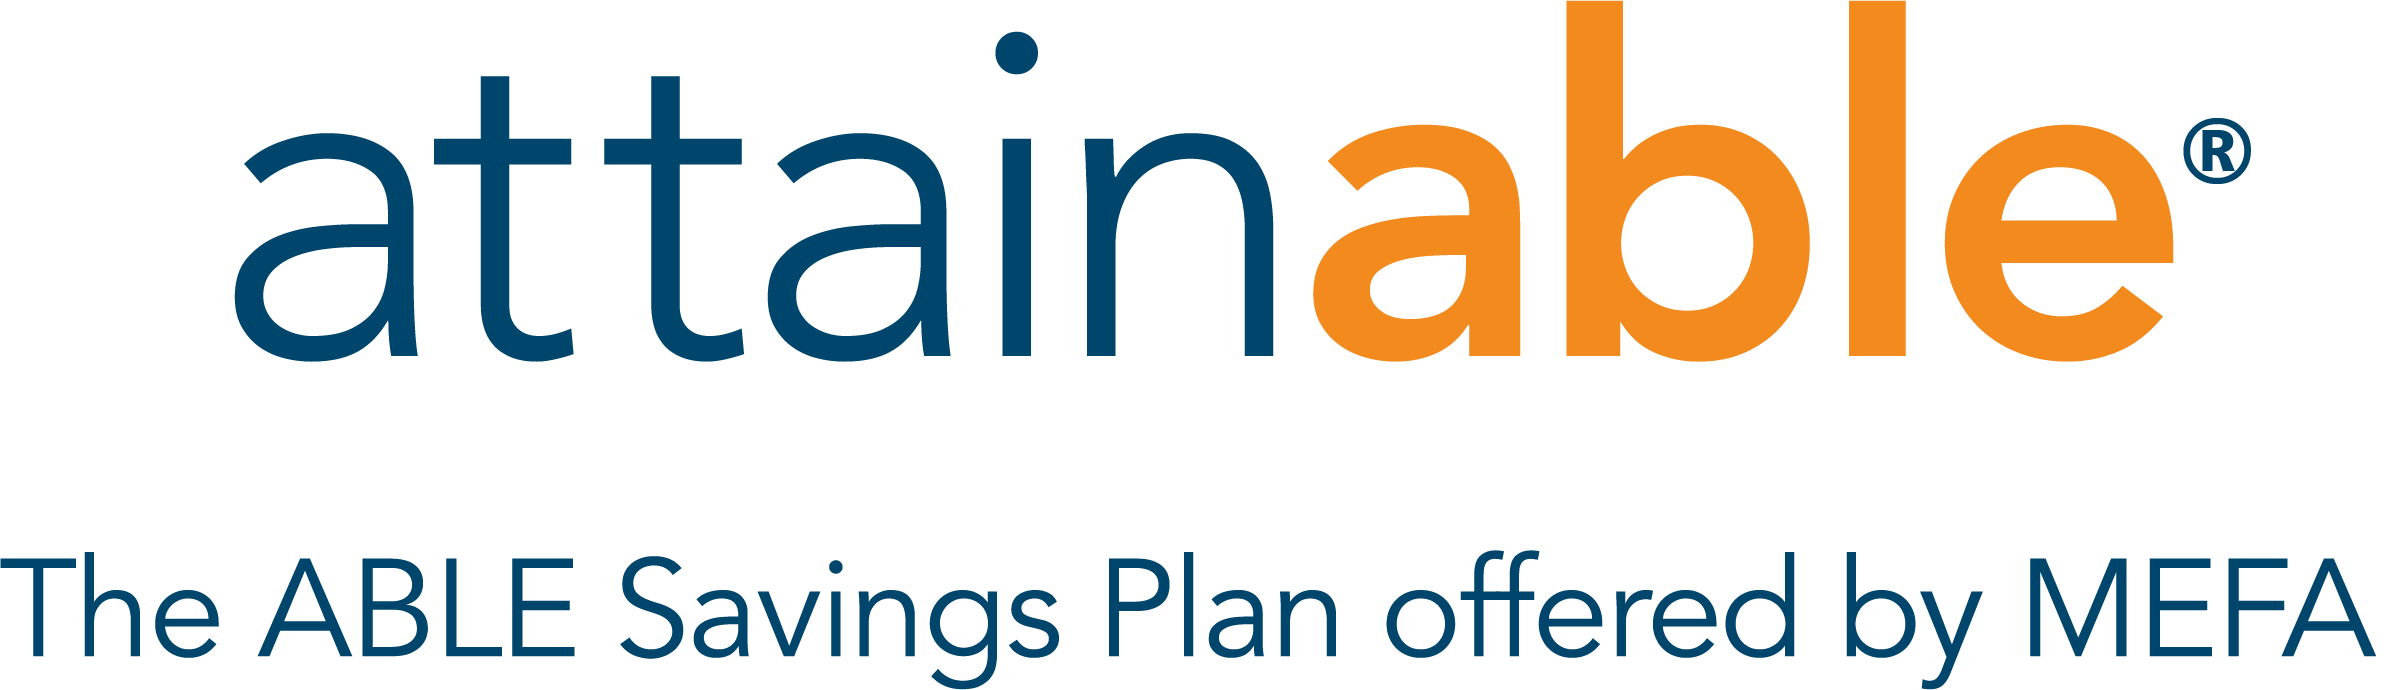 Attainable® Savings Plan Logo